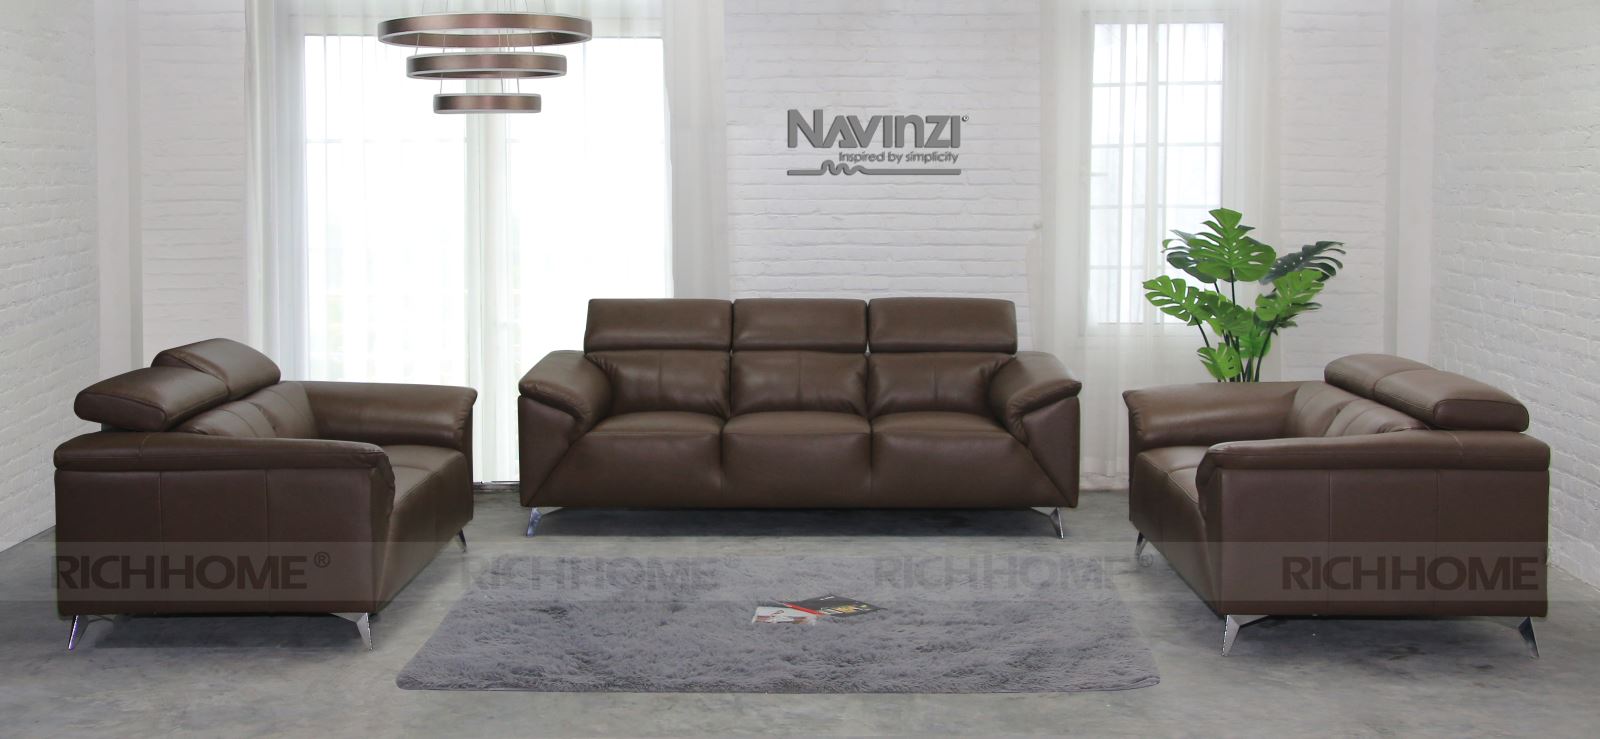 Ghế sofa nhập khẩu chất lượng nhất tại Hà Nội - Ảnh 4